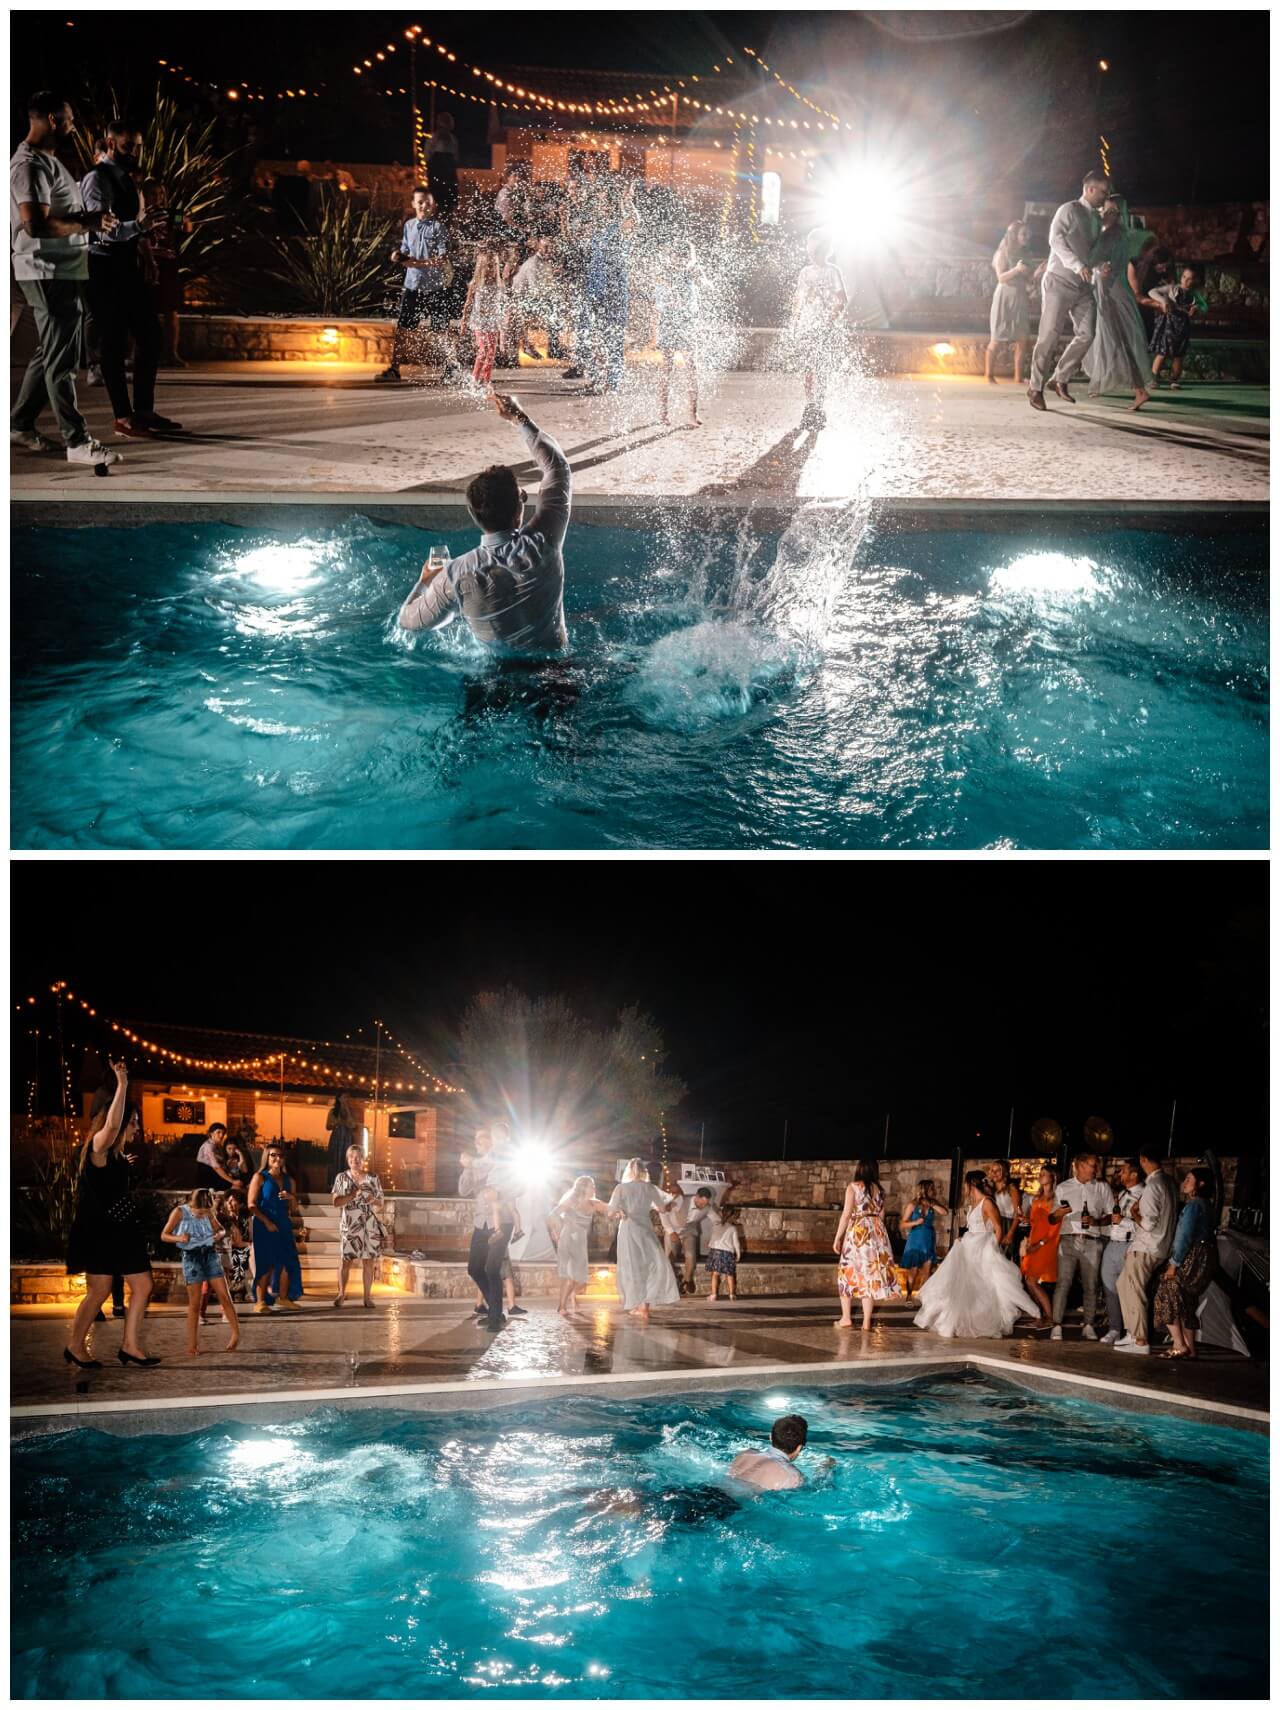 Hochzeit in Kroatien Hochzeitsfeier im Pool Wedding Kroatien, wedding in croatia,hochzeitsplanerin kroatien, hochzeit in kroatien